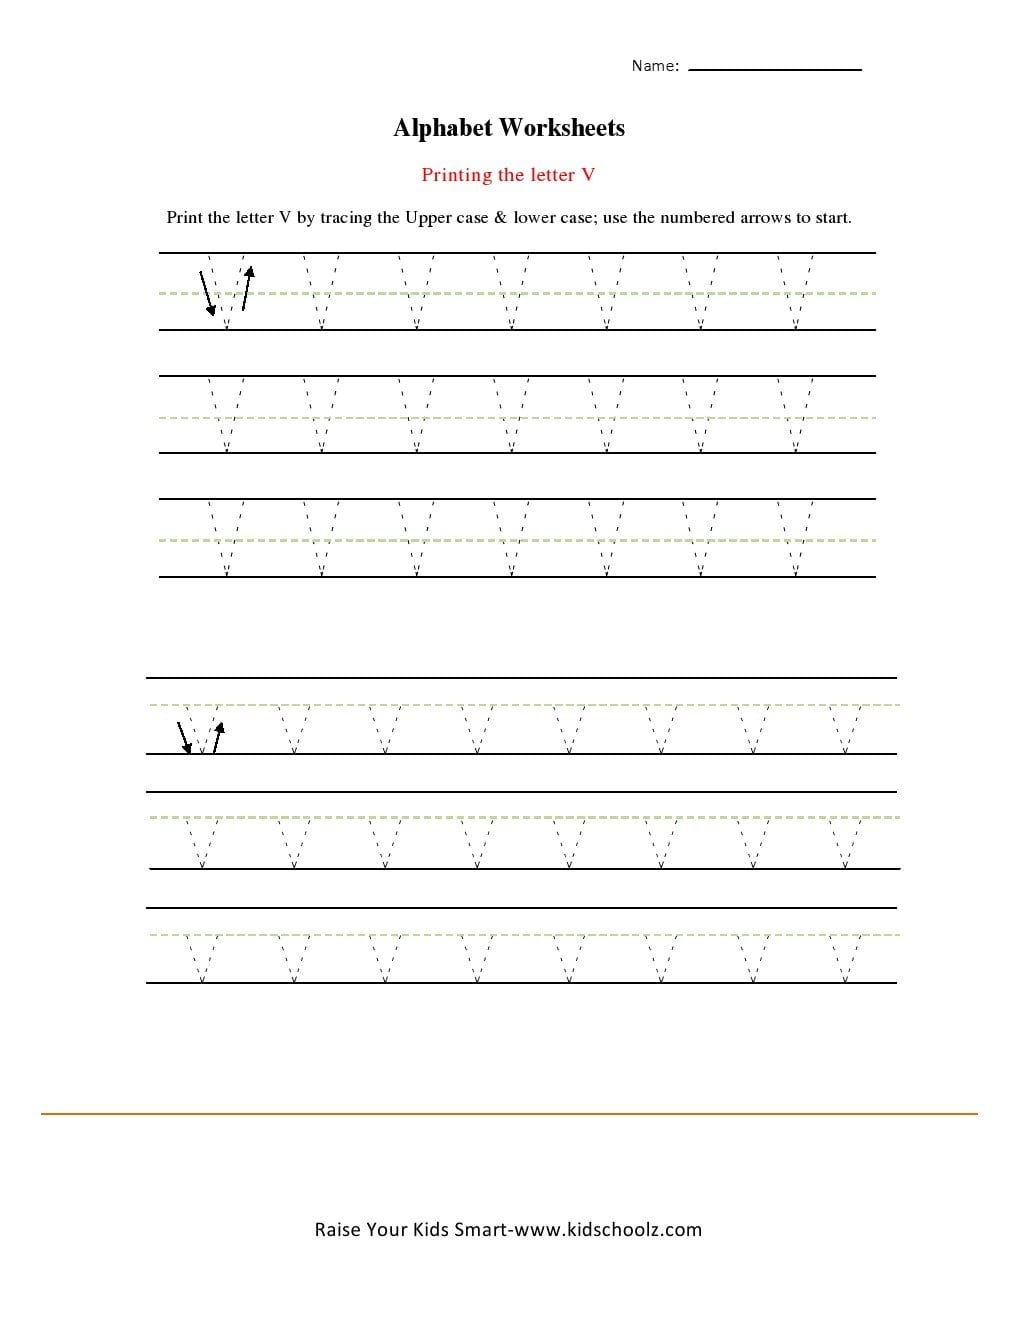 Alphabets Tracing Worksheets  Letter V  Kidschoolz And Telugu Writing Worksheets